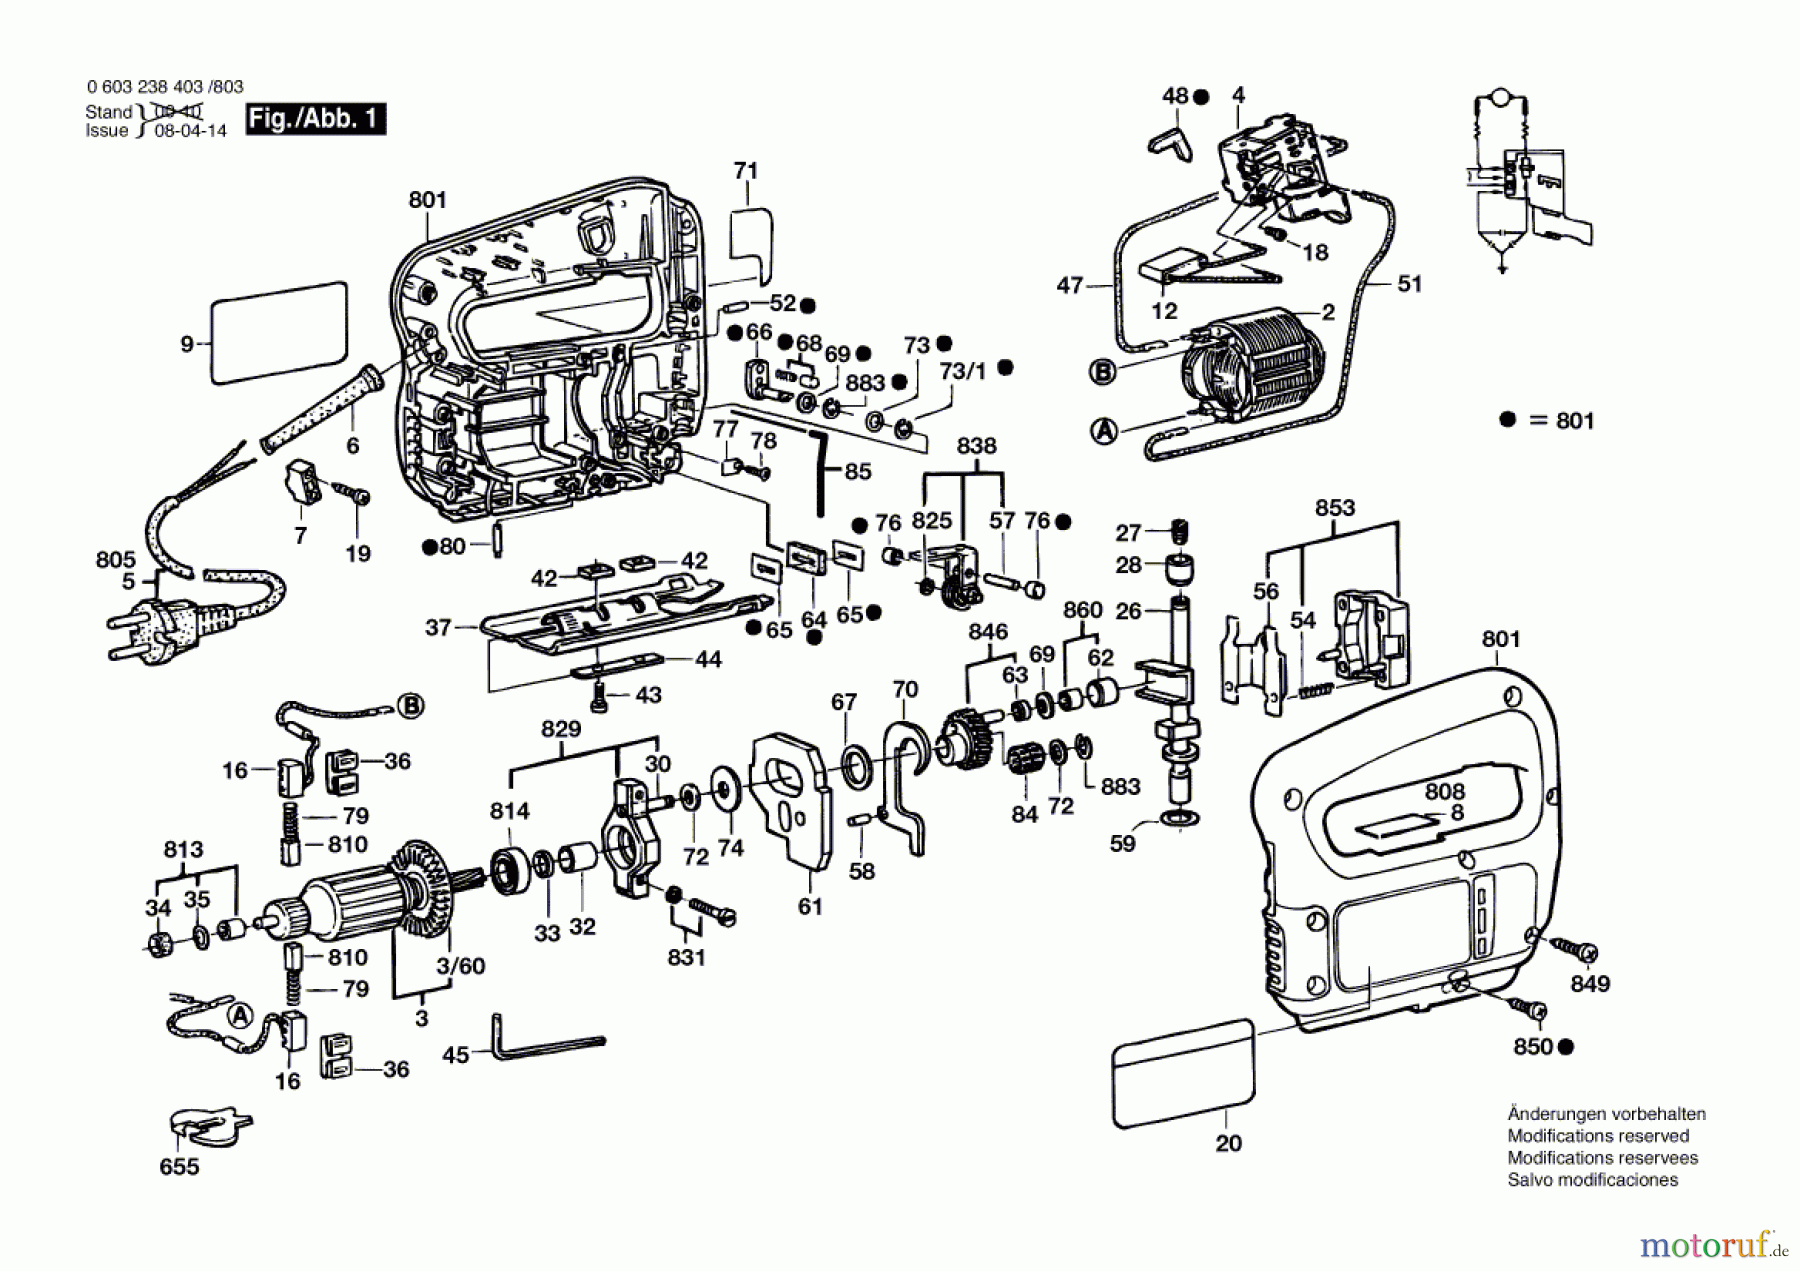  Bosch Werkzeug Stichsäge PST 54 PE Seite 1